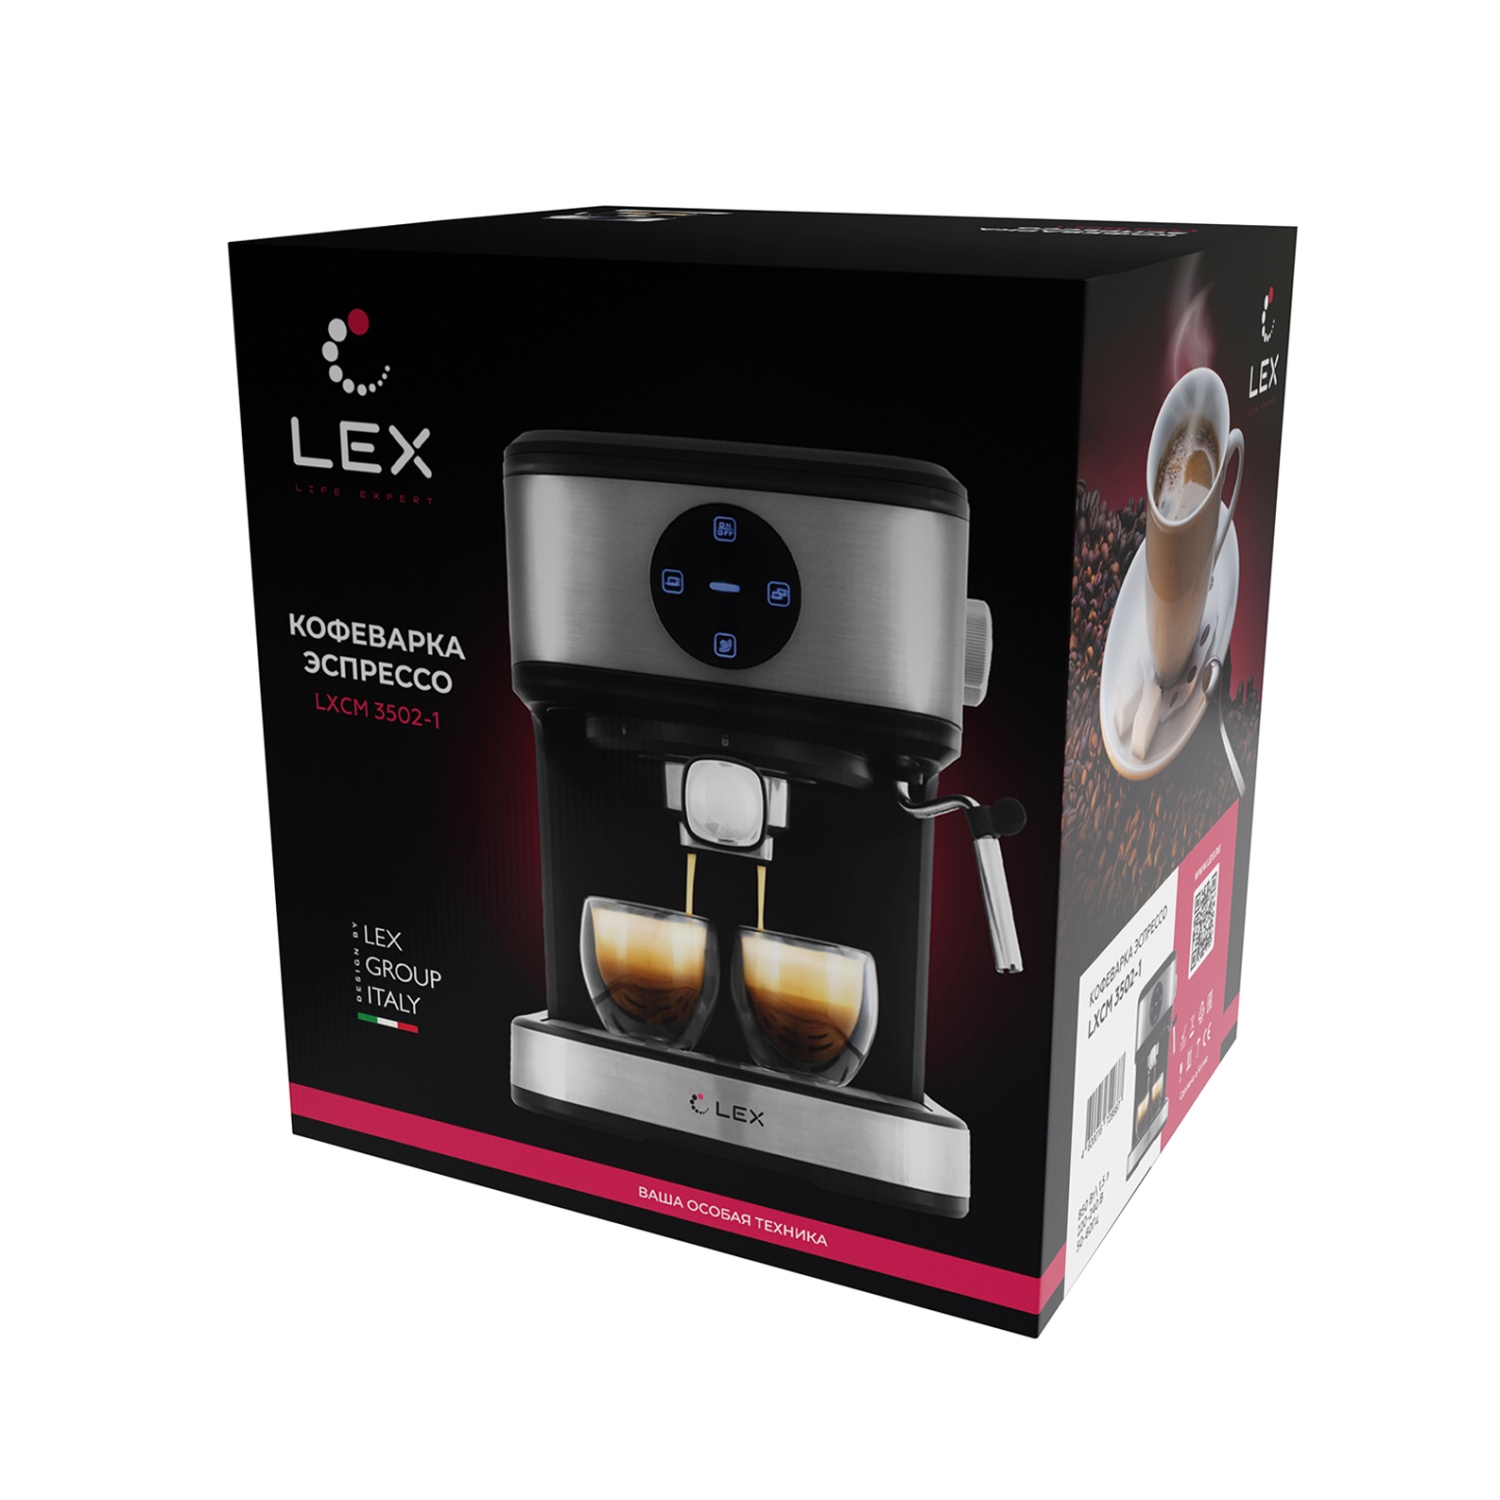 Кофеварка LEX LXCM 3502-1